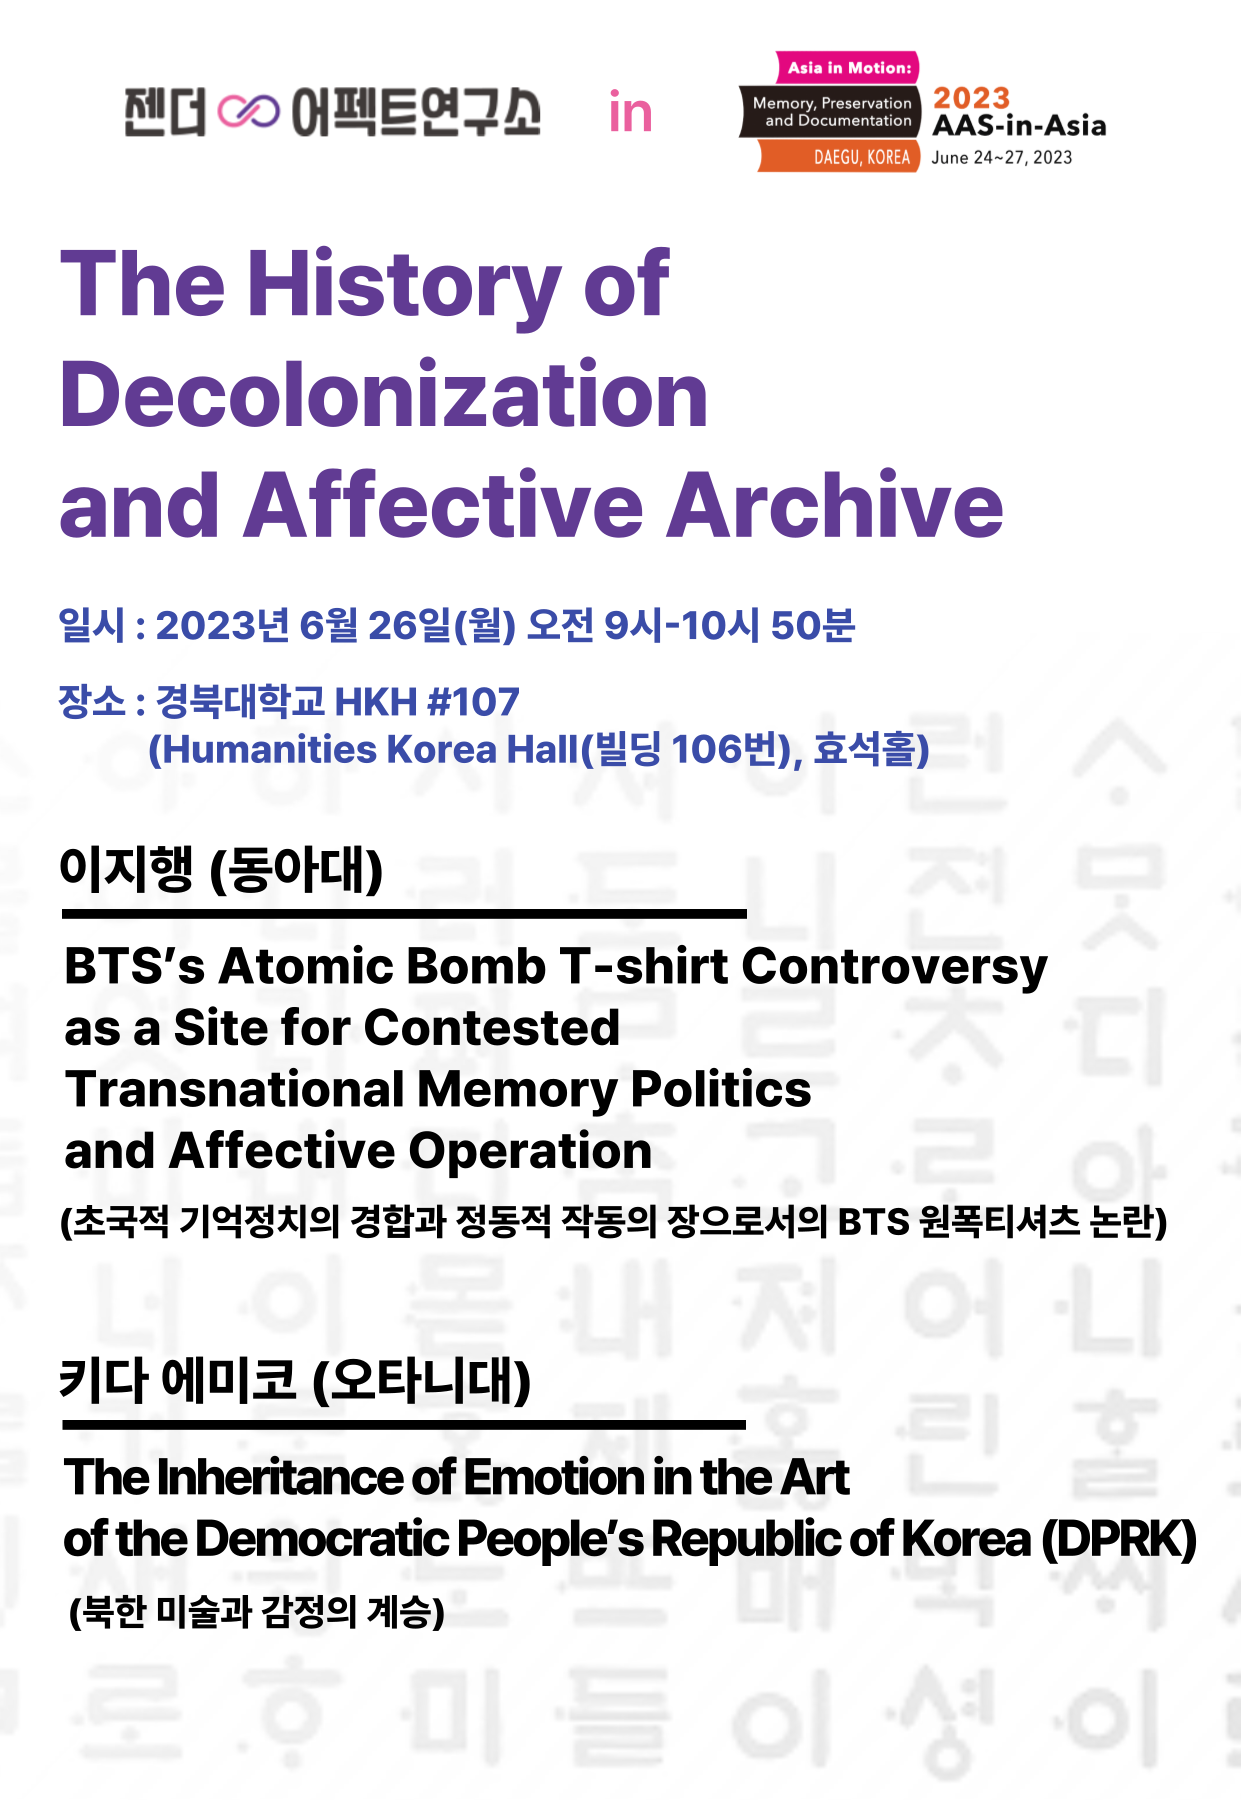 문구: '젠더 C 어펙트연구소 Asia Motion: 2023 tation AAS-in-Asia DAEGU, KOREA June 2023 The History of Decolonization and Affective Archive 일시: 2023년 6월 26일(ì›”) 오전 9시-10시 50분 장소: 경북대학교 HKH #107 (Humanities Korea Hal(빌딩 Hall 106번), 효석홀) 이지행 (동아대) BTS's Atomic Bomb T-shirt Controversy as a Site for Contested Transnational Memory Politics and Affective Operation (초국적 기억정치의 경합과 정동적 작동의 장으로서의 BTS 원폭티셔츠 논란) 키다 에미코 (오타니대) The Inheritance of Emotion in the Art the Democratic People's Republic of Korea (DPRK) (북한 미술과 감정의 계승) ላ'의 이미지일 수 있음